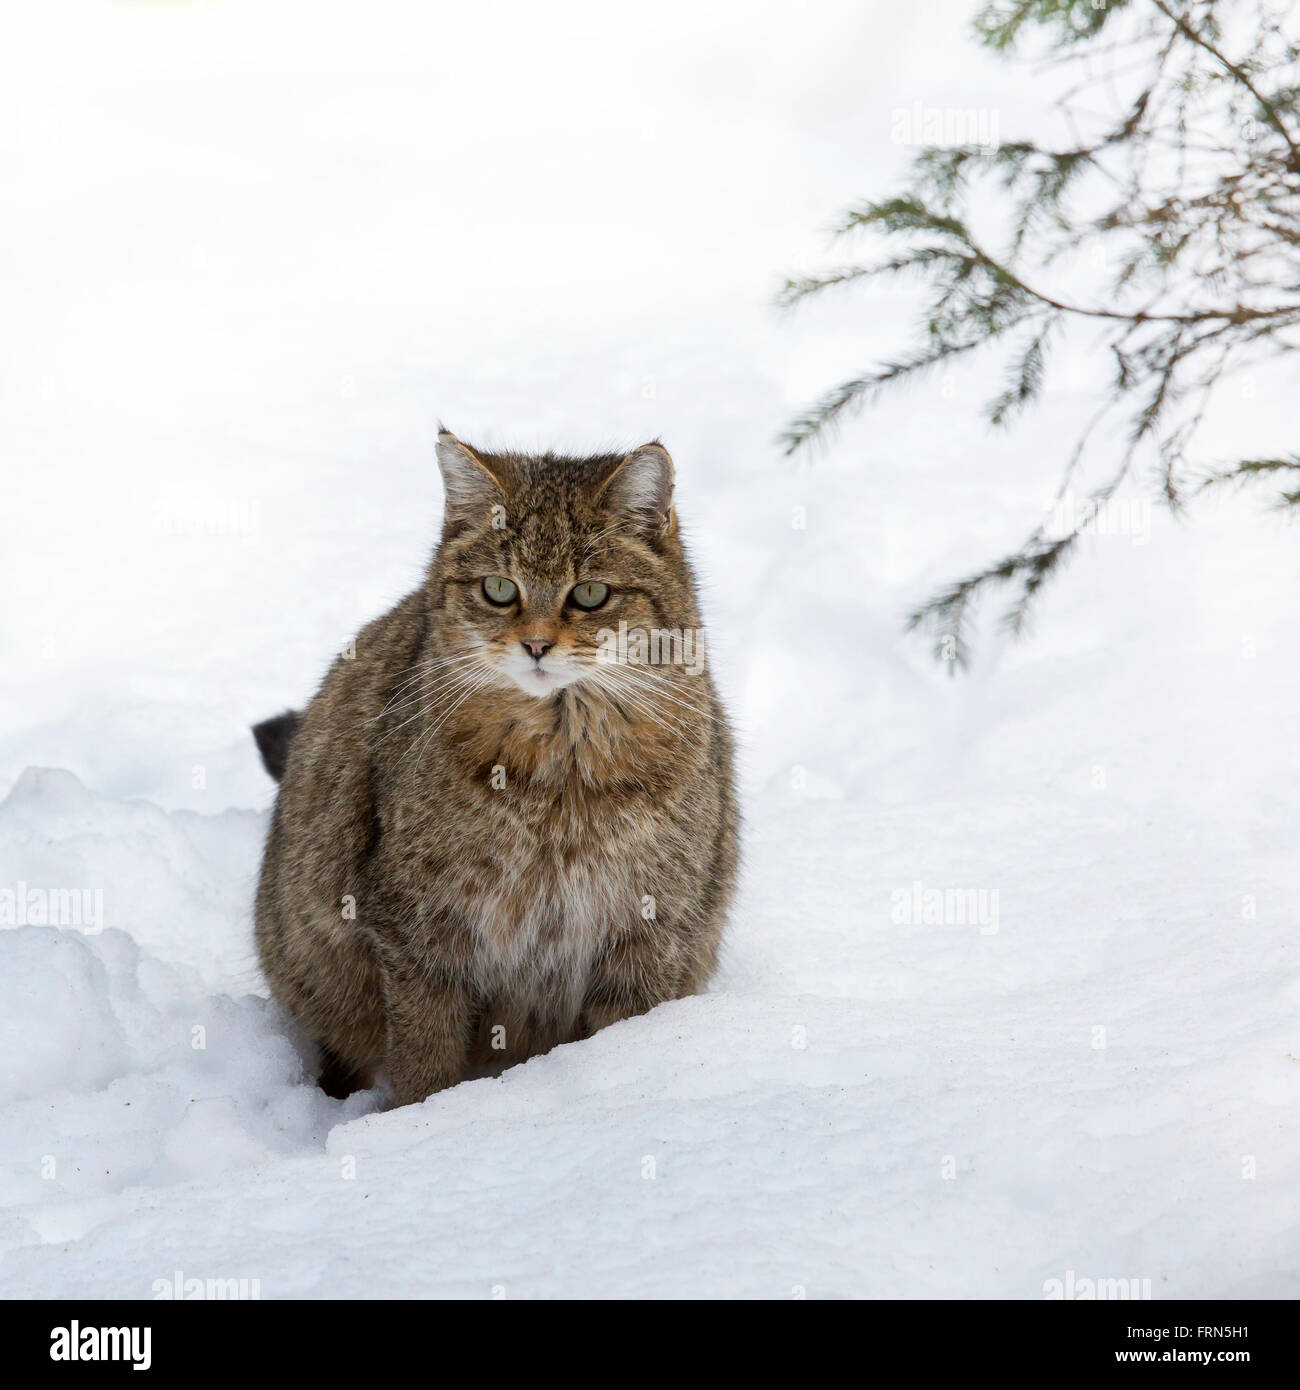 Unione gatto selvatico (Felis silvestris silvestris) seduta nella neve in inverno Foto Stock